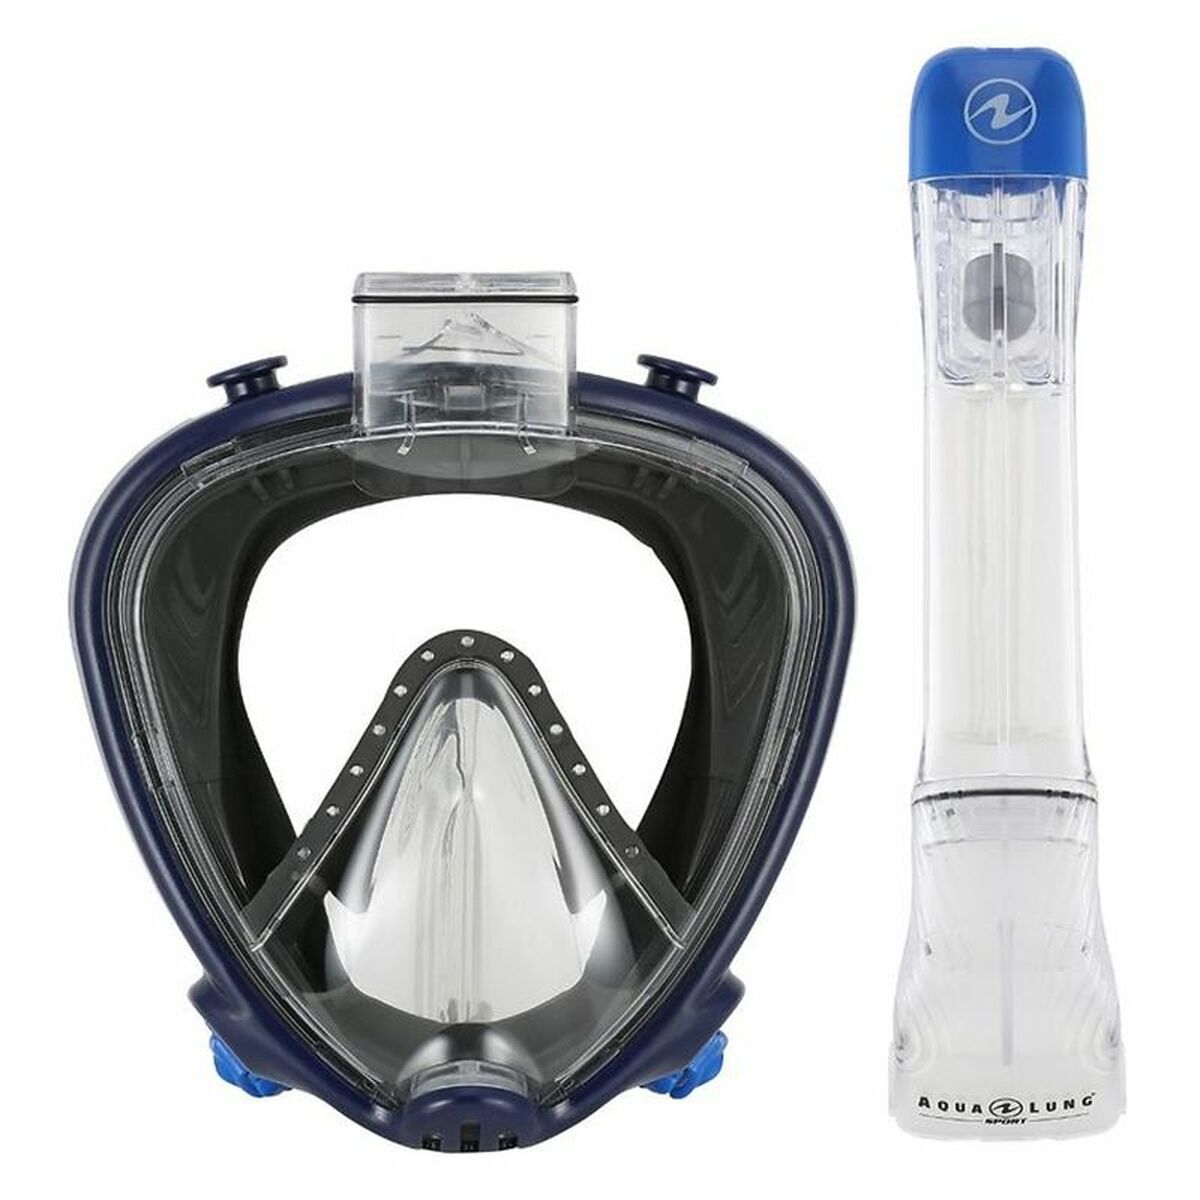 Tauchermaske Aqua Lung Sport Smart Schwarz